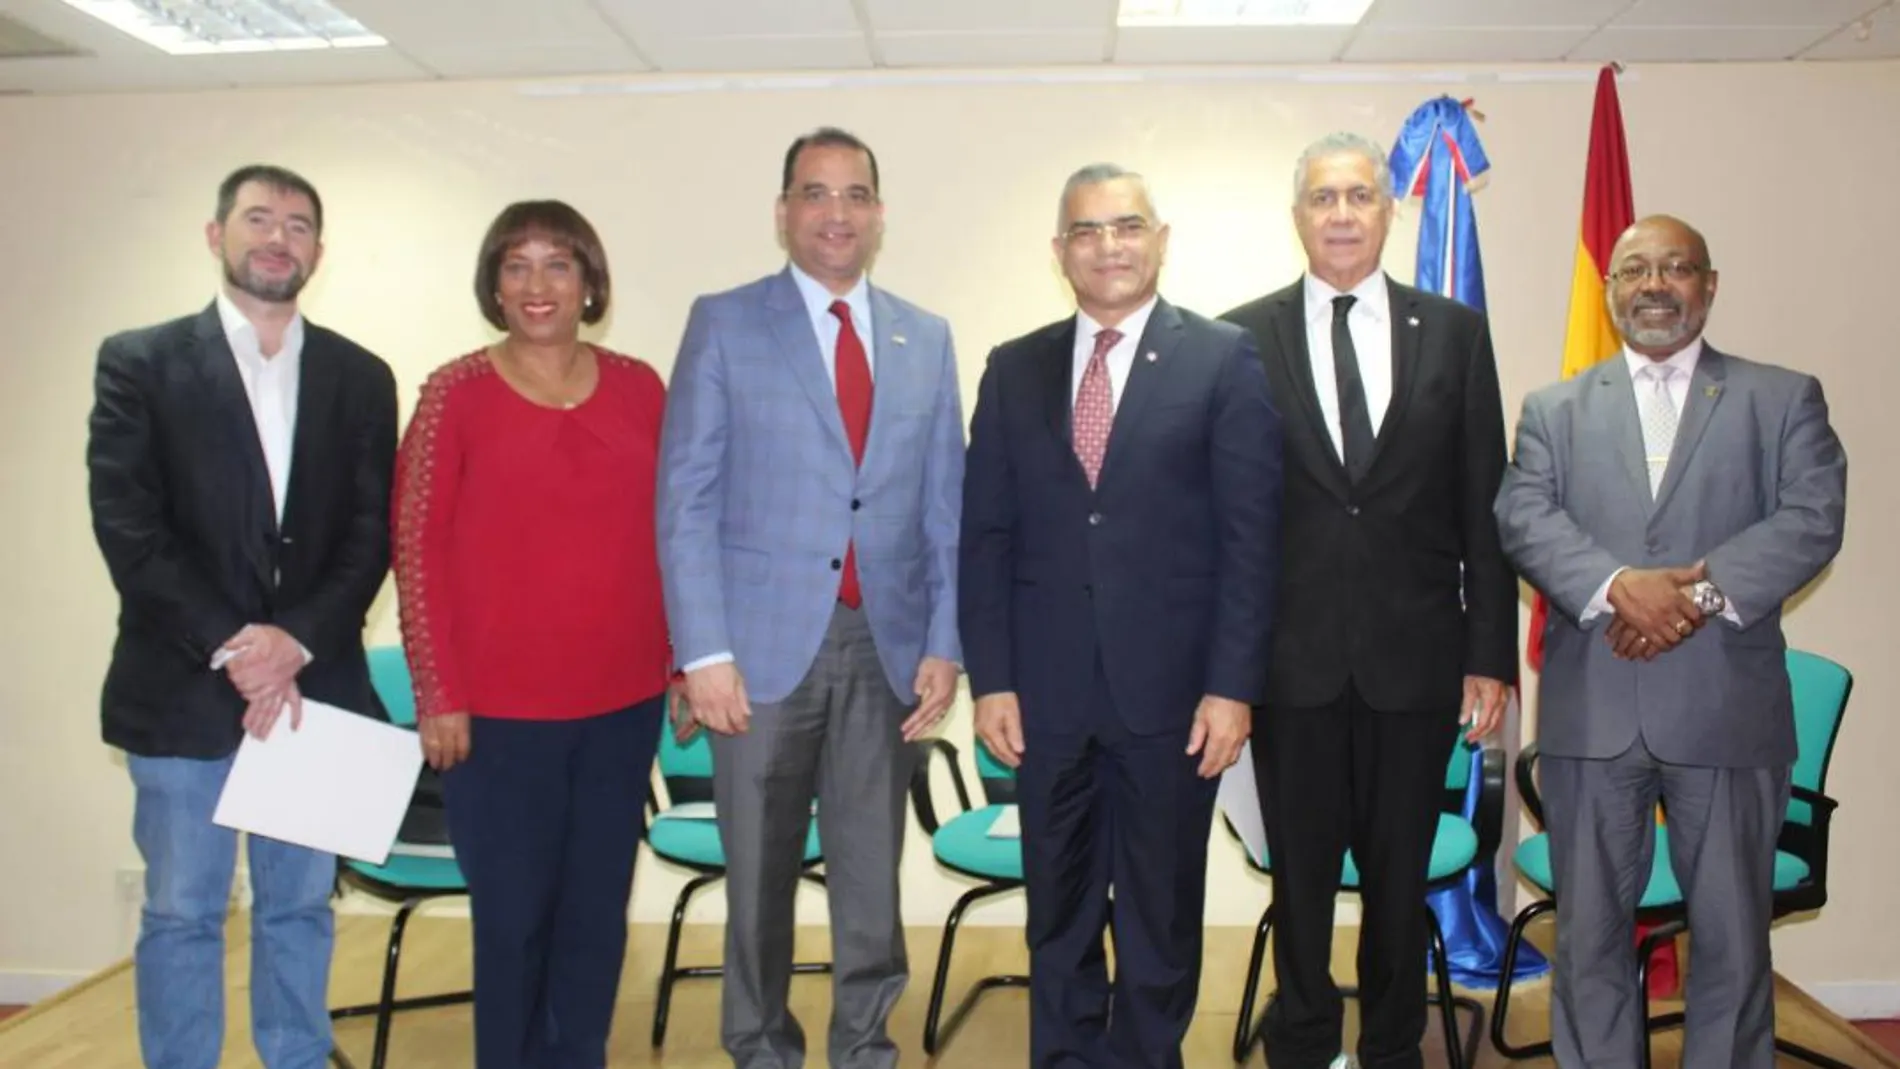 En el centro de la imagen, el embajador dominicano Olivo Andrés Rodríguez Huertas, acompañado de la delegación del Ministerio de Relaciones Exteriores de la R. Dominicana.